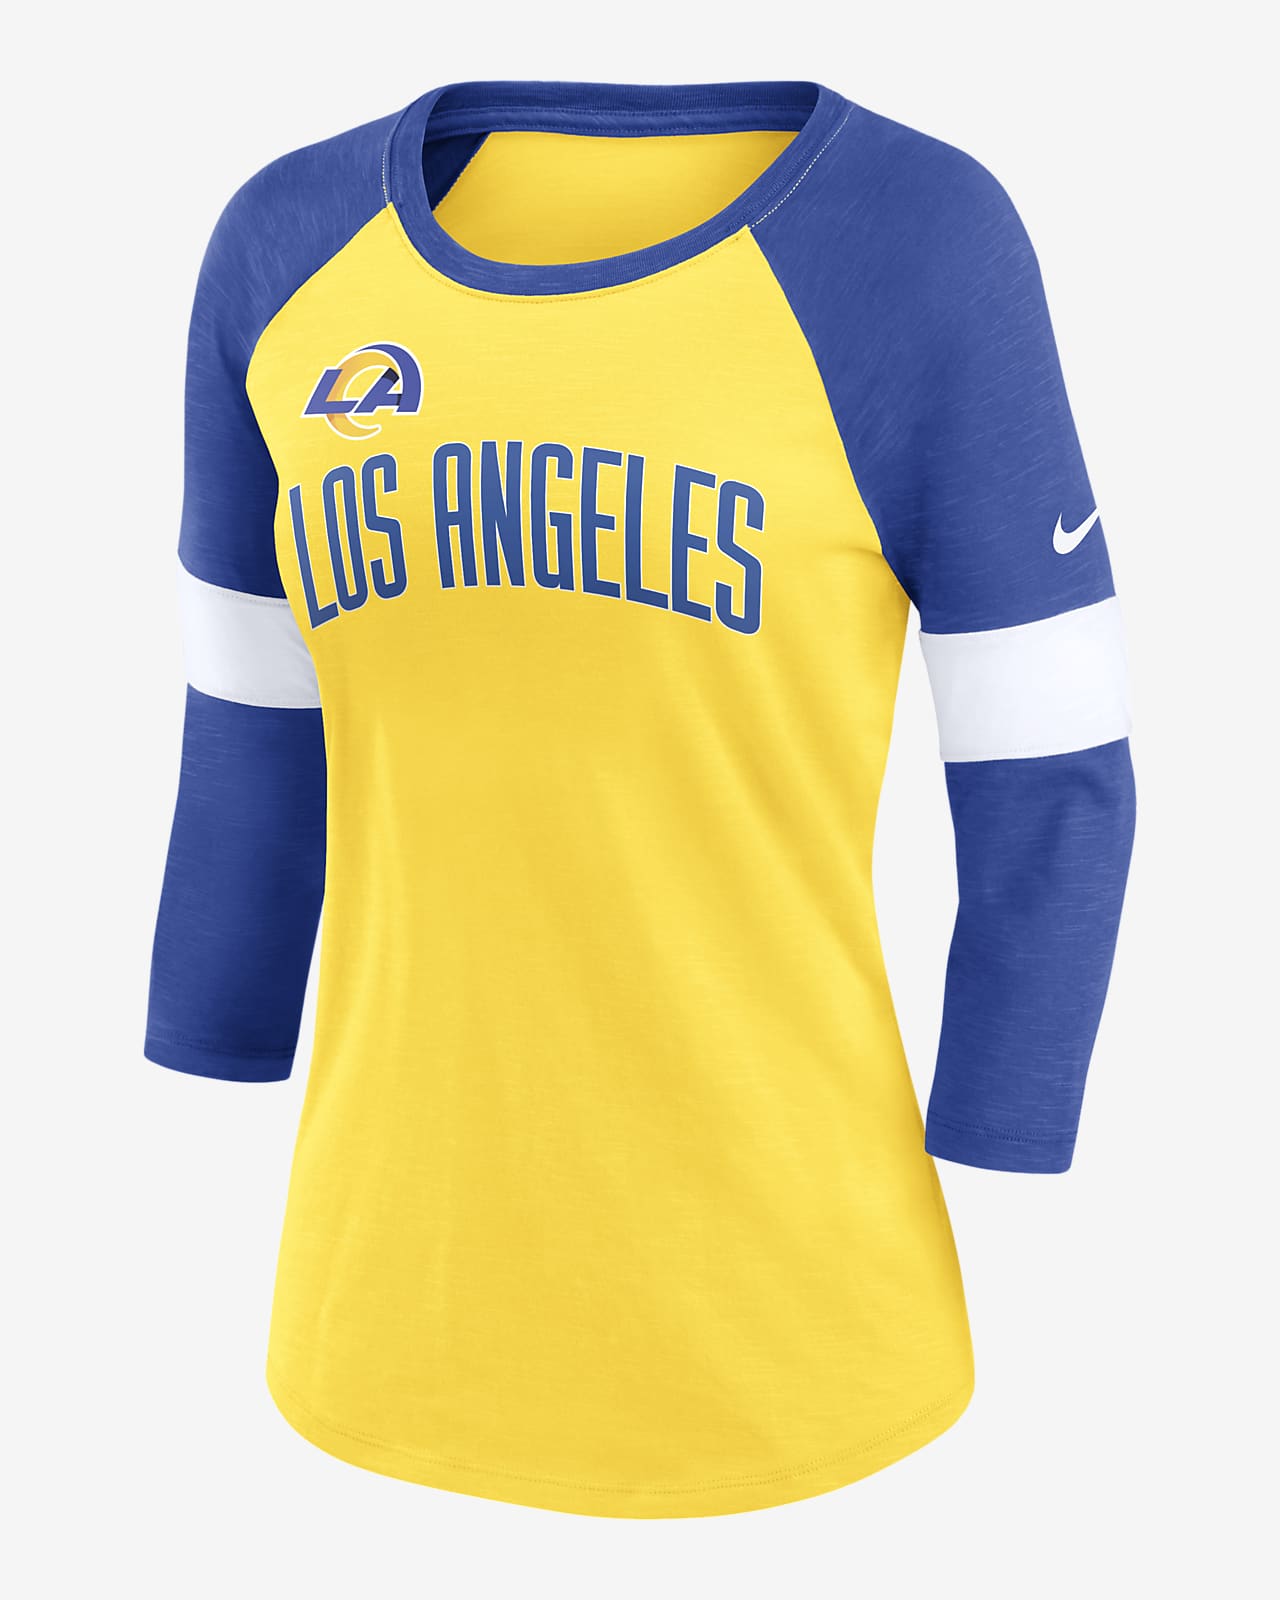 Nike Pride (NFL Los Angeles Rams) Women's 3/4-Sleeve T-Shirt